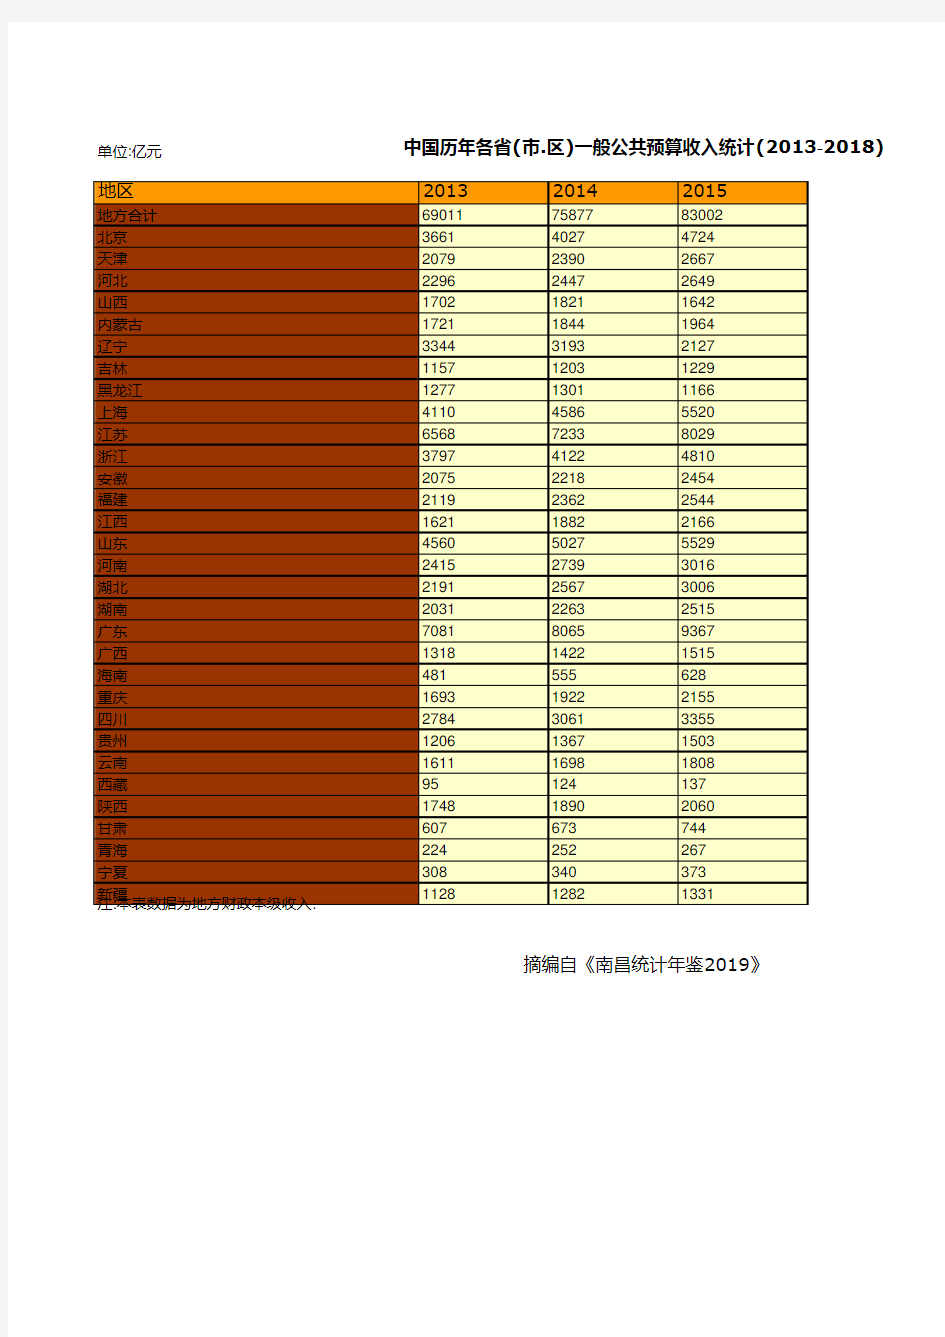 中国历年各省(市.区)一般公共预算收入统计(2013-2018)